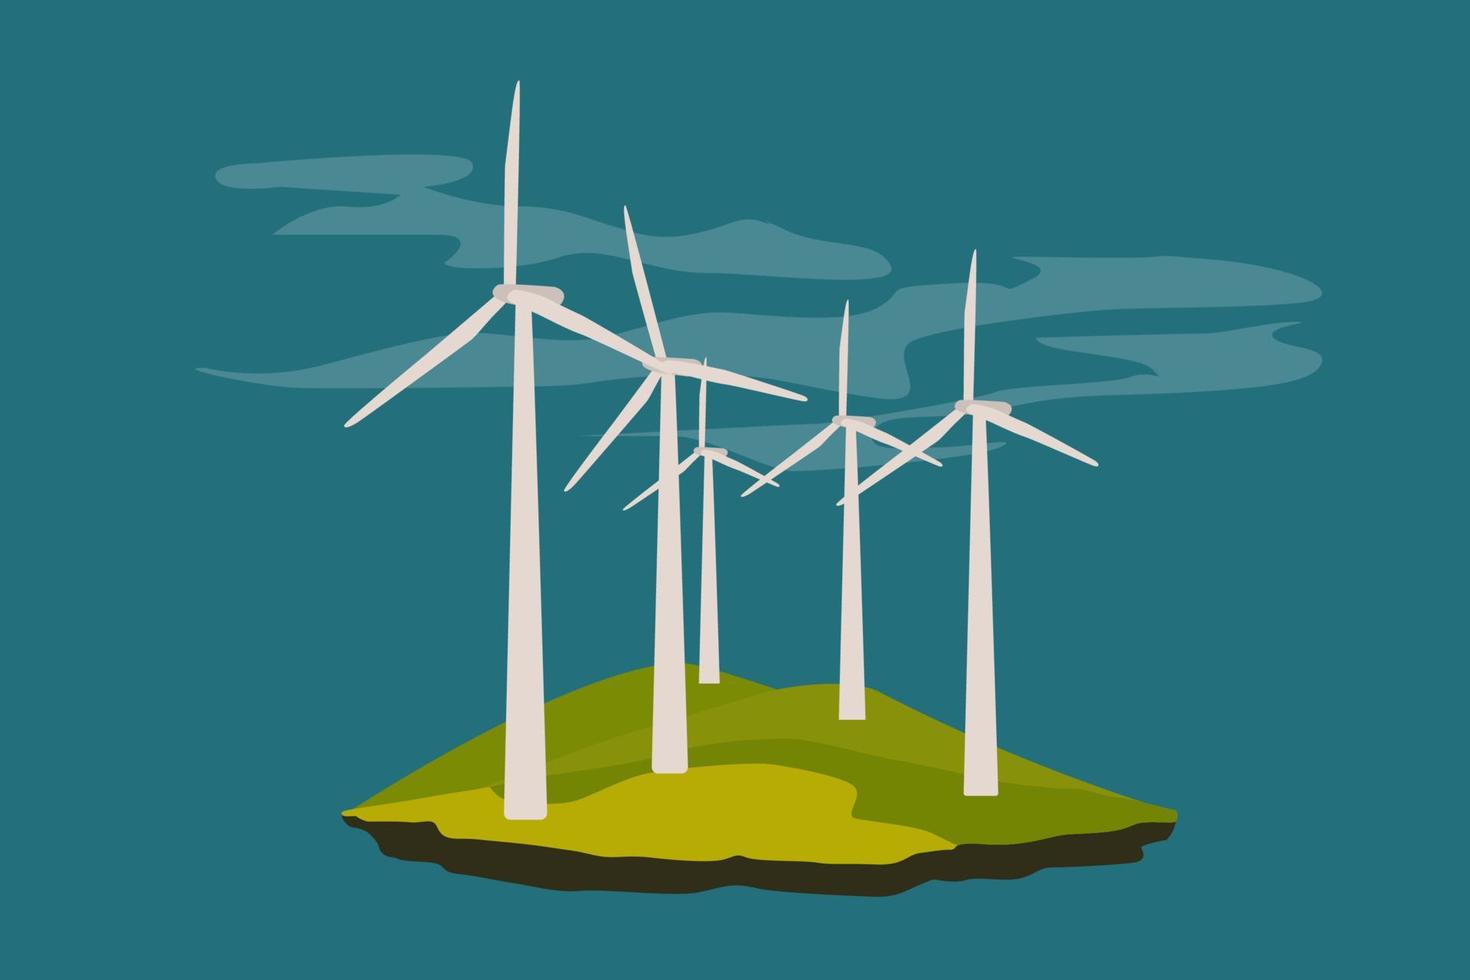 éoliennes. concept d'obtention d'énergie électrique propre à partir de sources renouvelables. vecteur